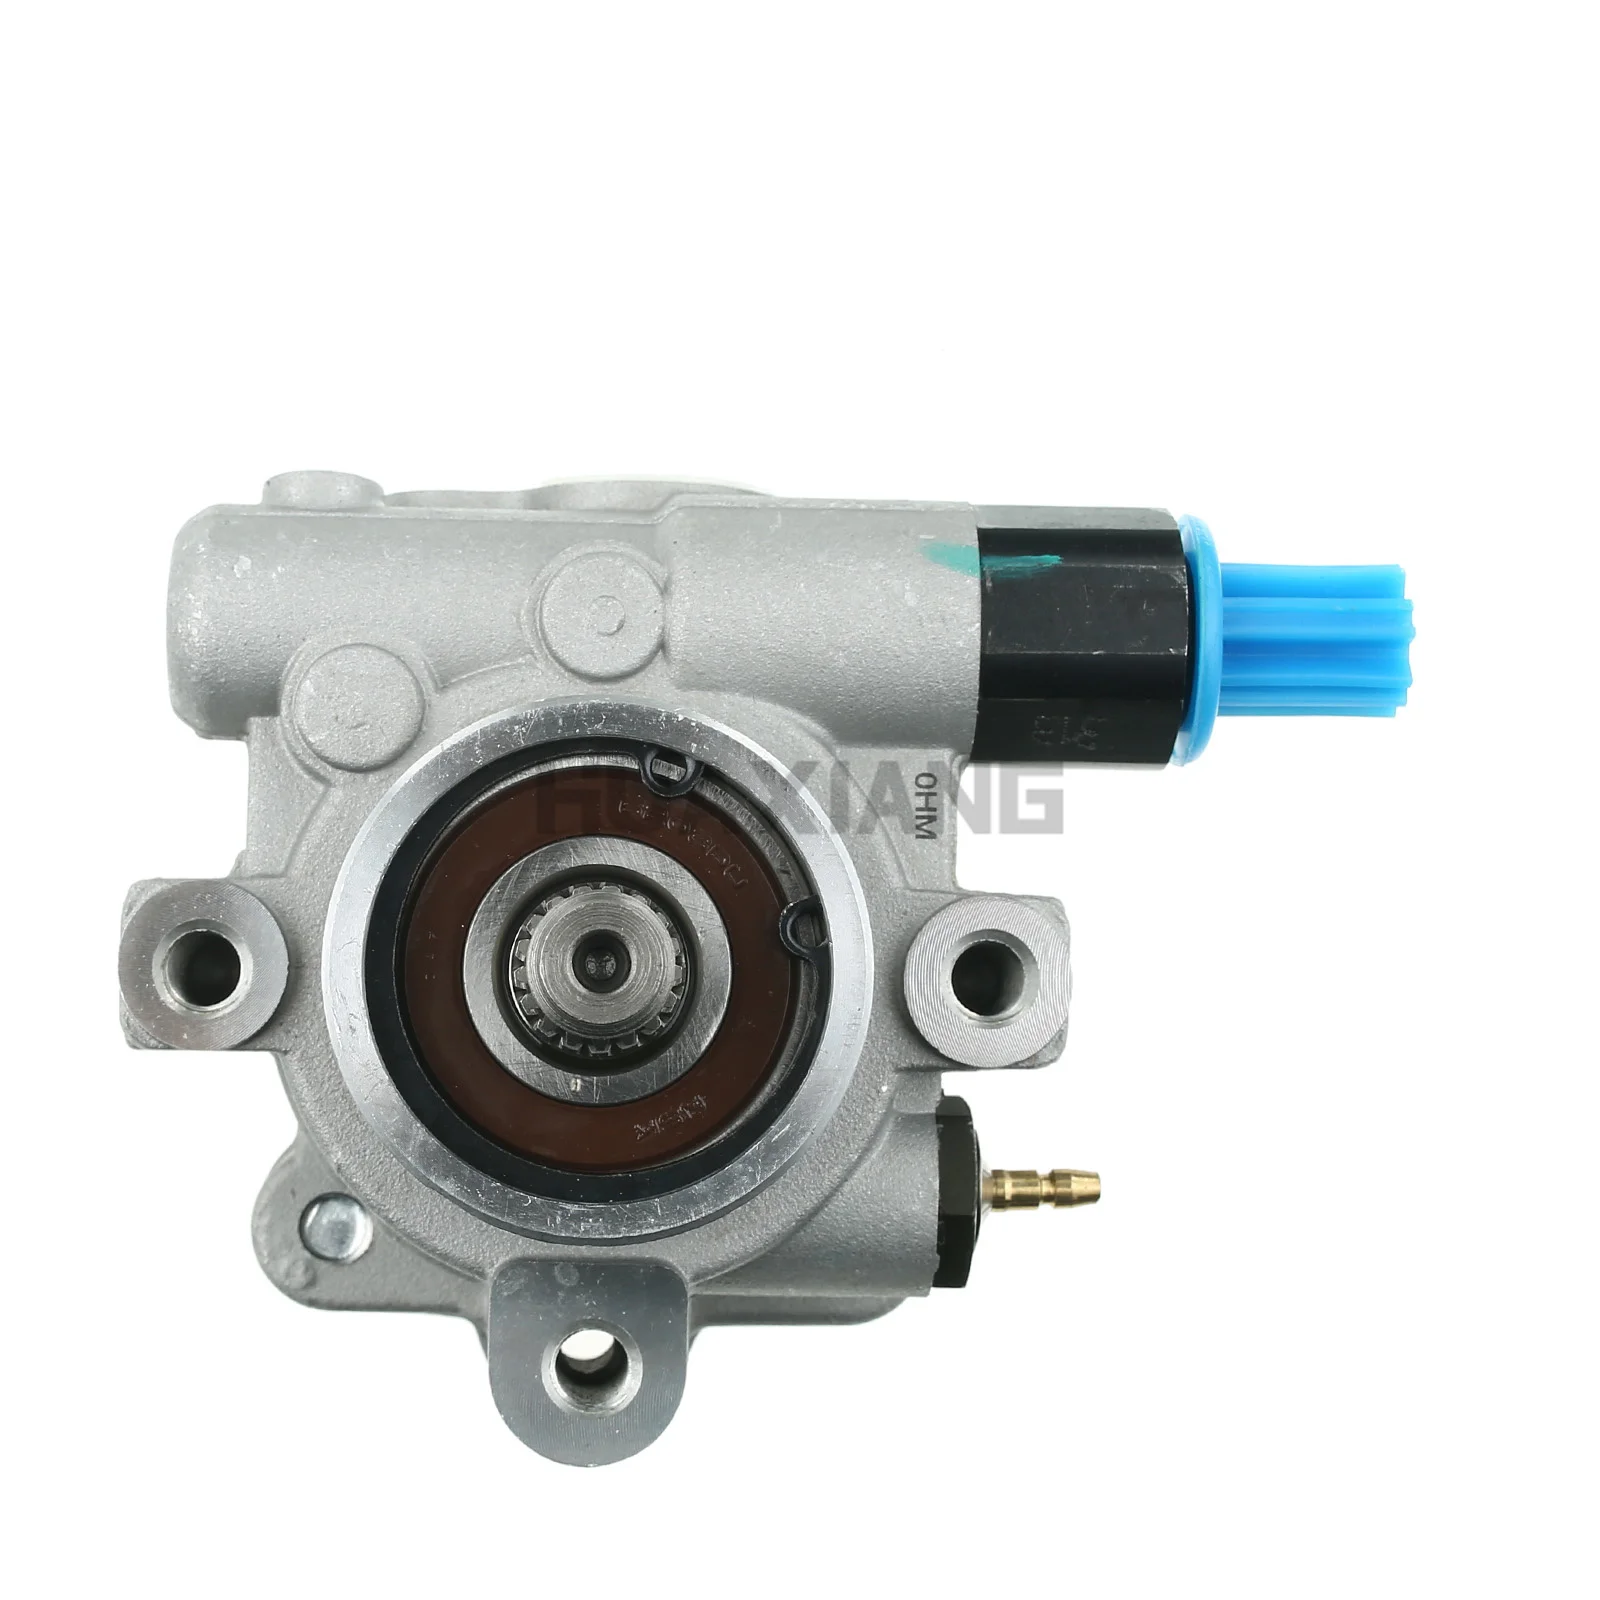 

In-stock CN US CA Power Steering Pump for Mazda 626 Millenia MX-3 MX-6 1992-2002 1.8L-2.5L 21-5862 EA0332600C